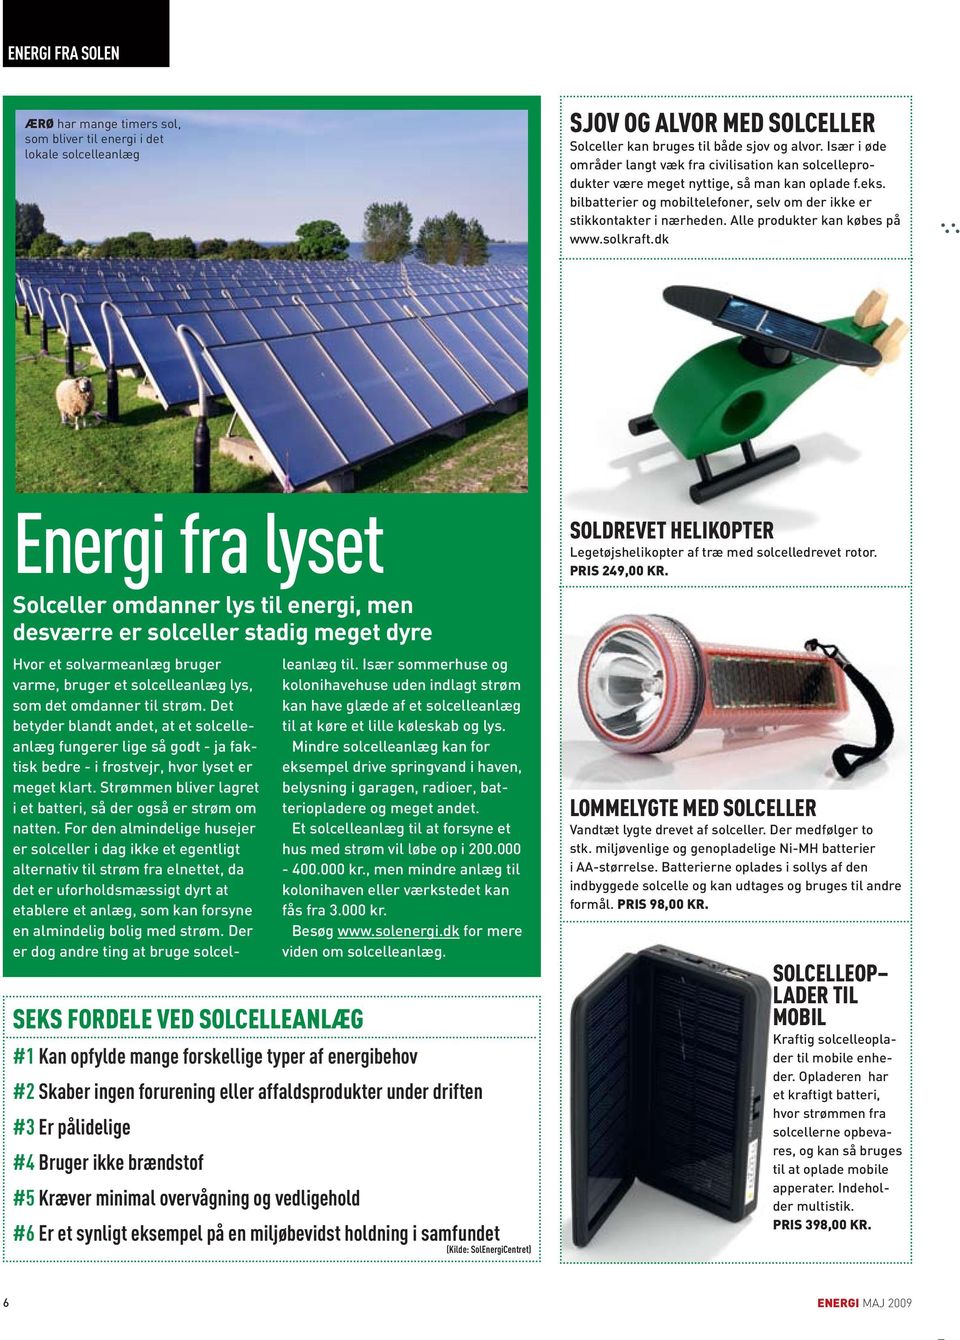 Alle produkter kan købes på www.solkraft.